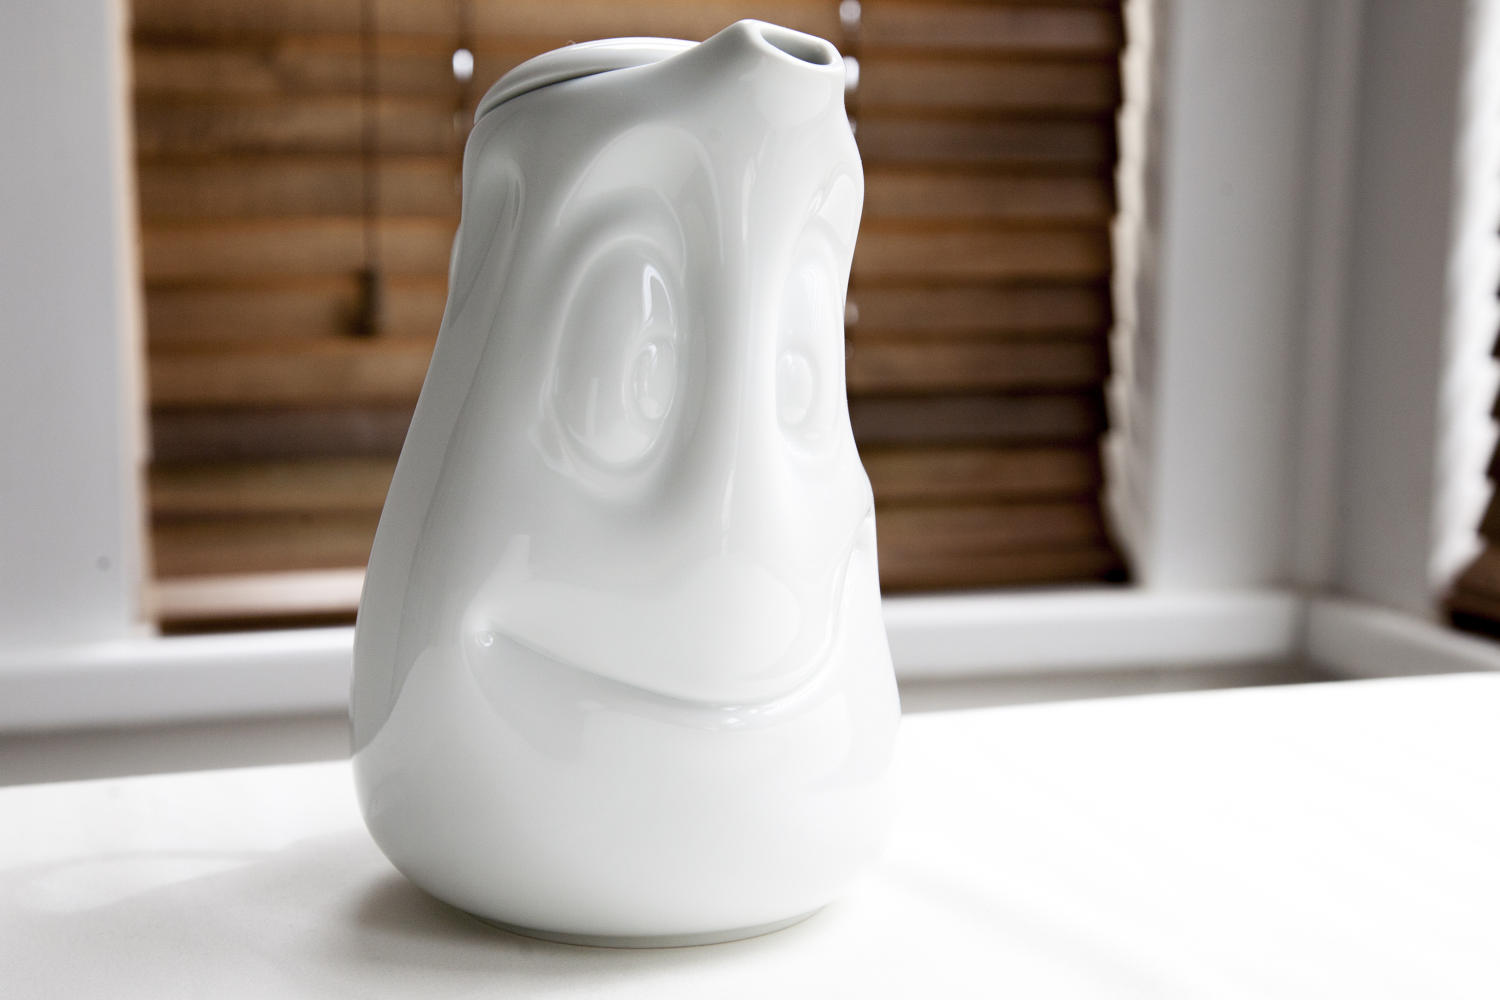 White porcelain smiling tea/coffee pot